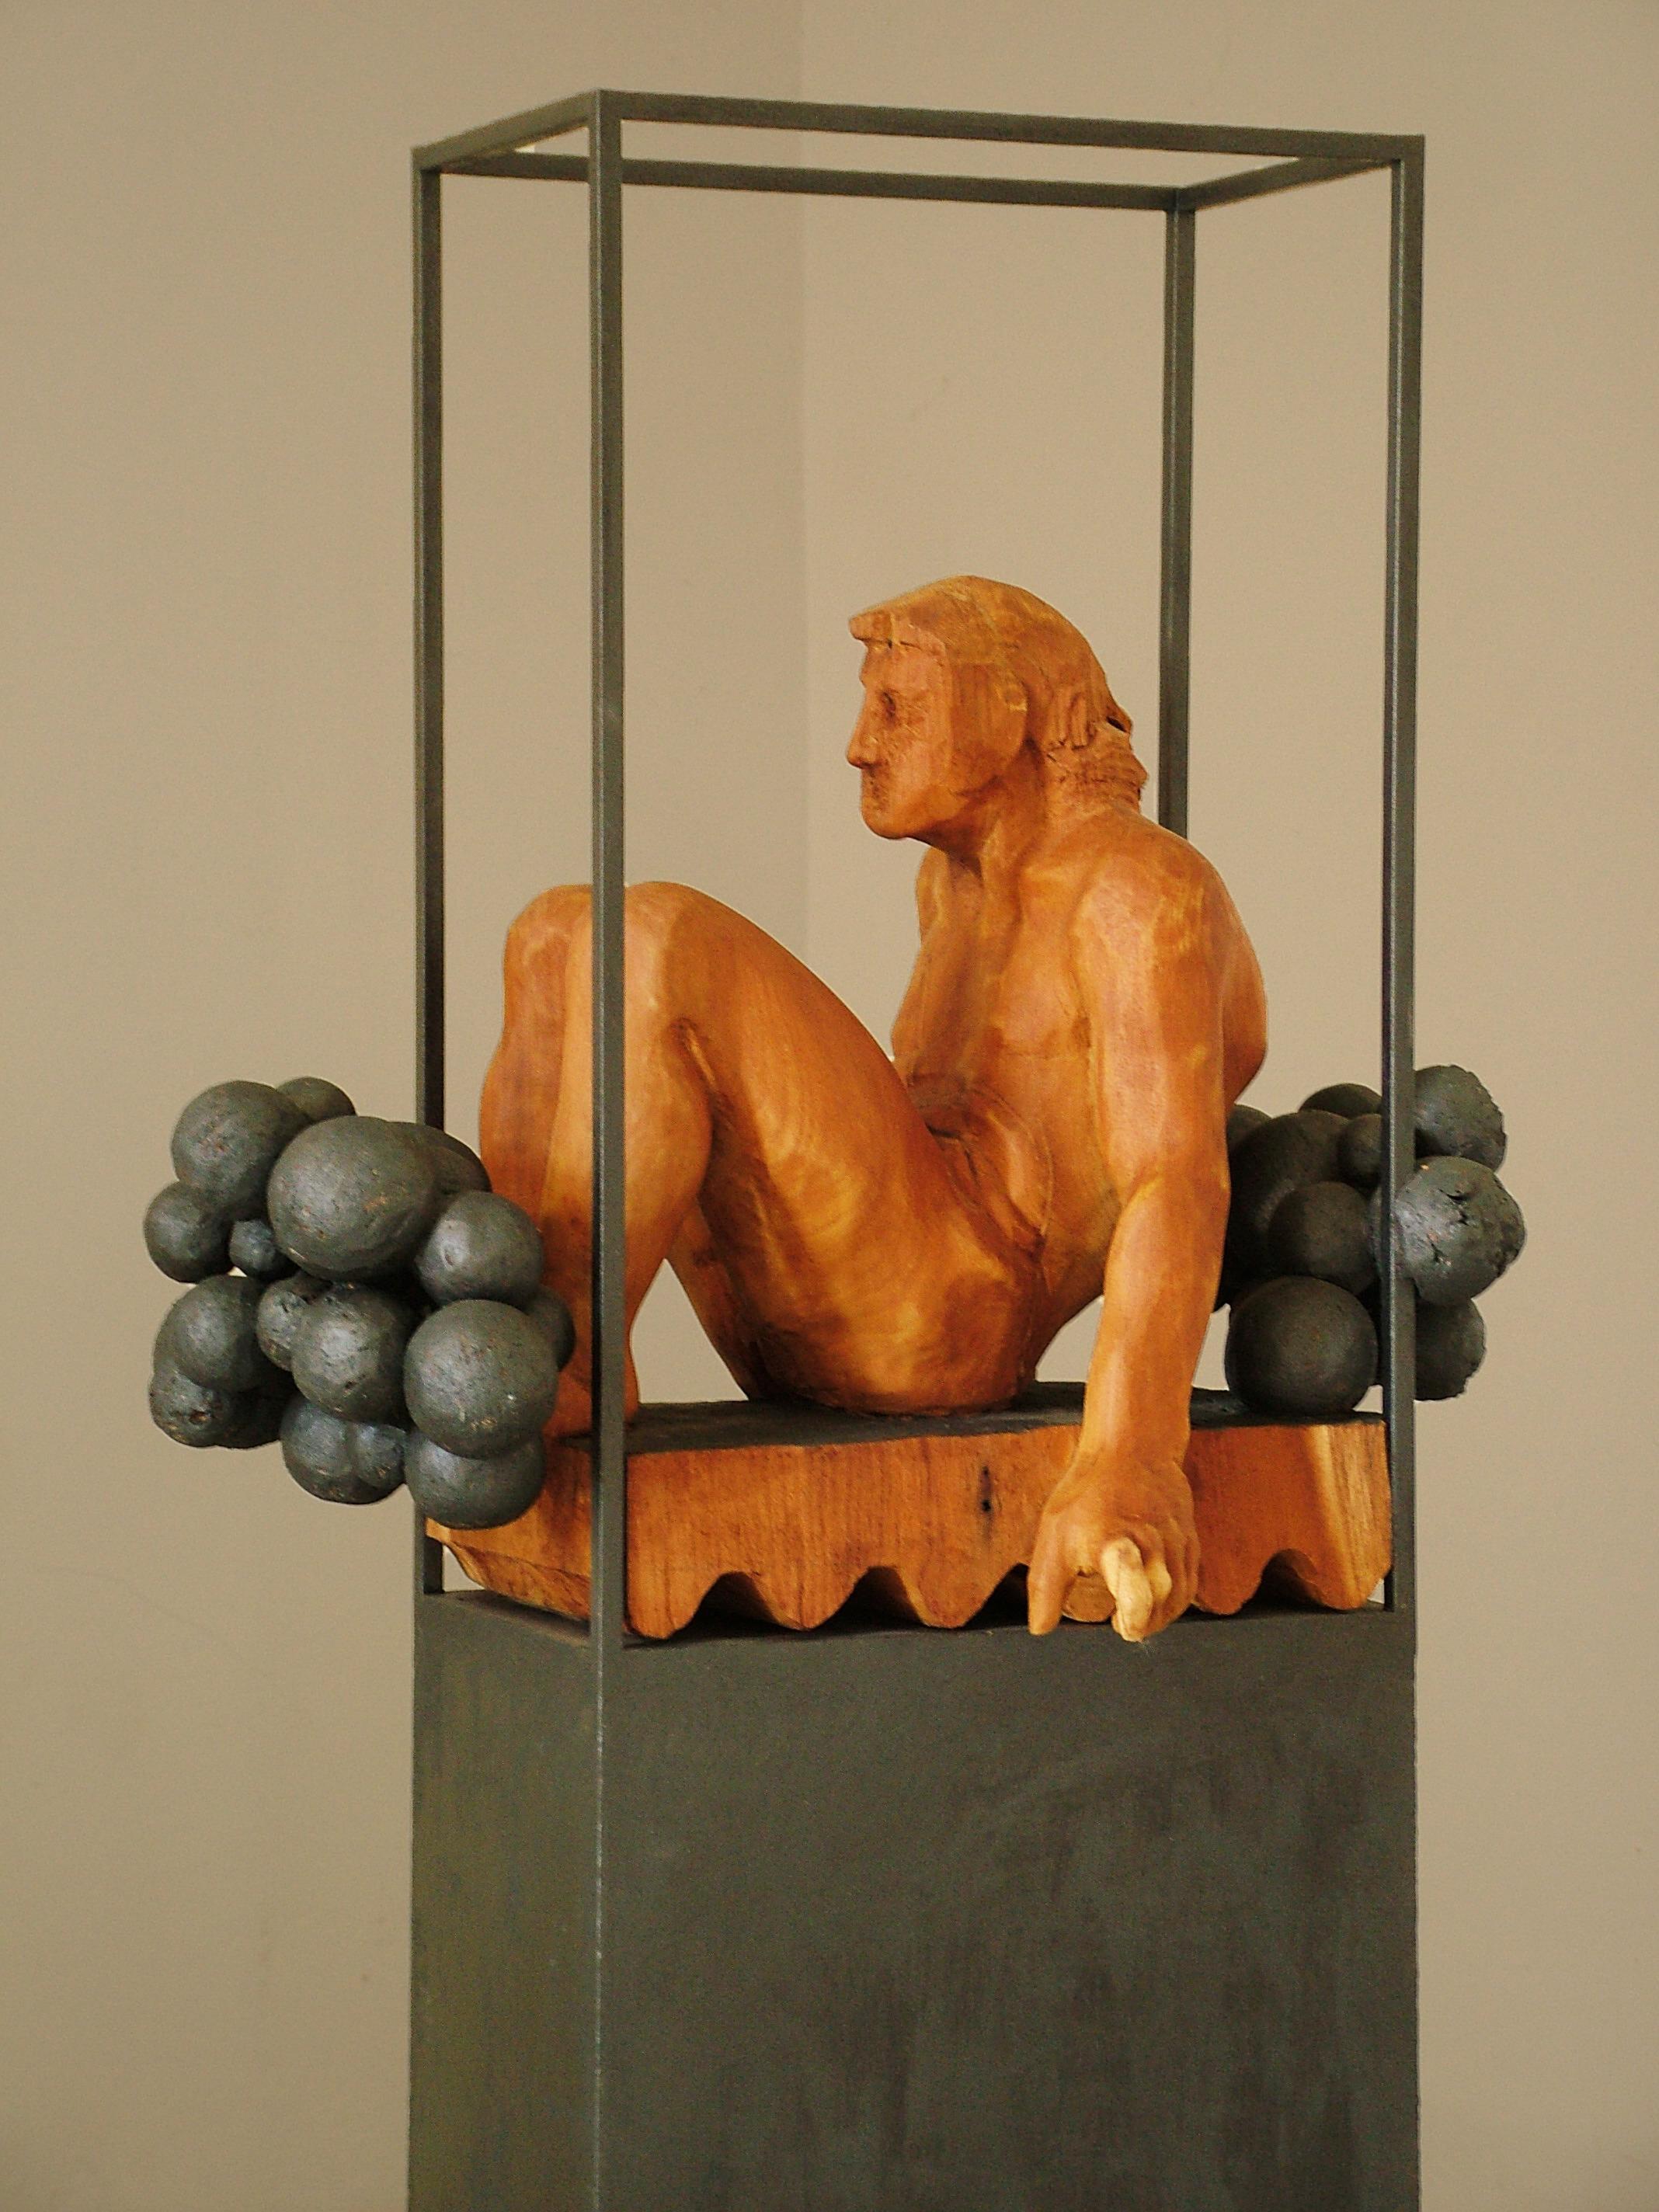 Amancio González Andrés Figurative Sculpture - Amancio   Niebla  Iron and Wood. original  sculpture